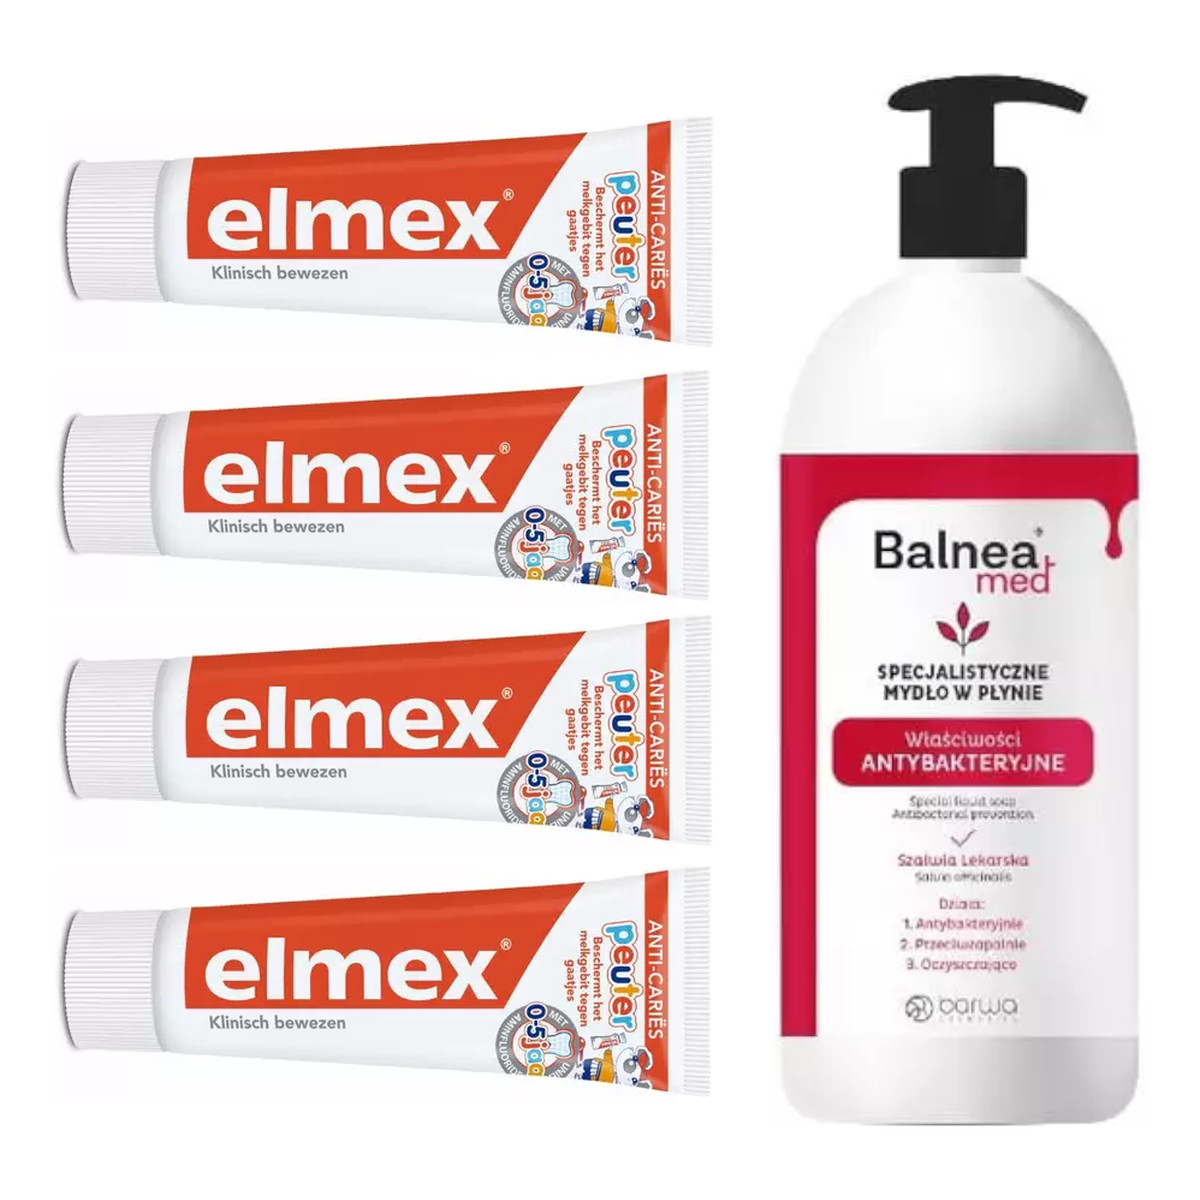 elmex Zestaw 4x Pasta do zębów 0-5 LAT + Balnea mydło w płynie GRATIS